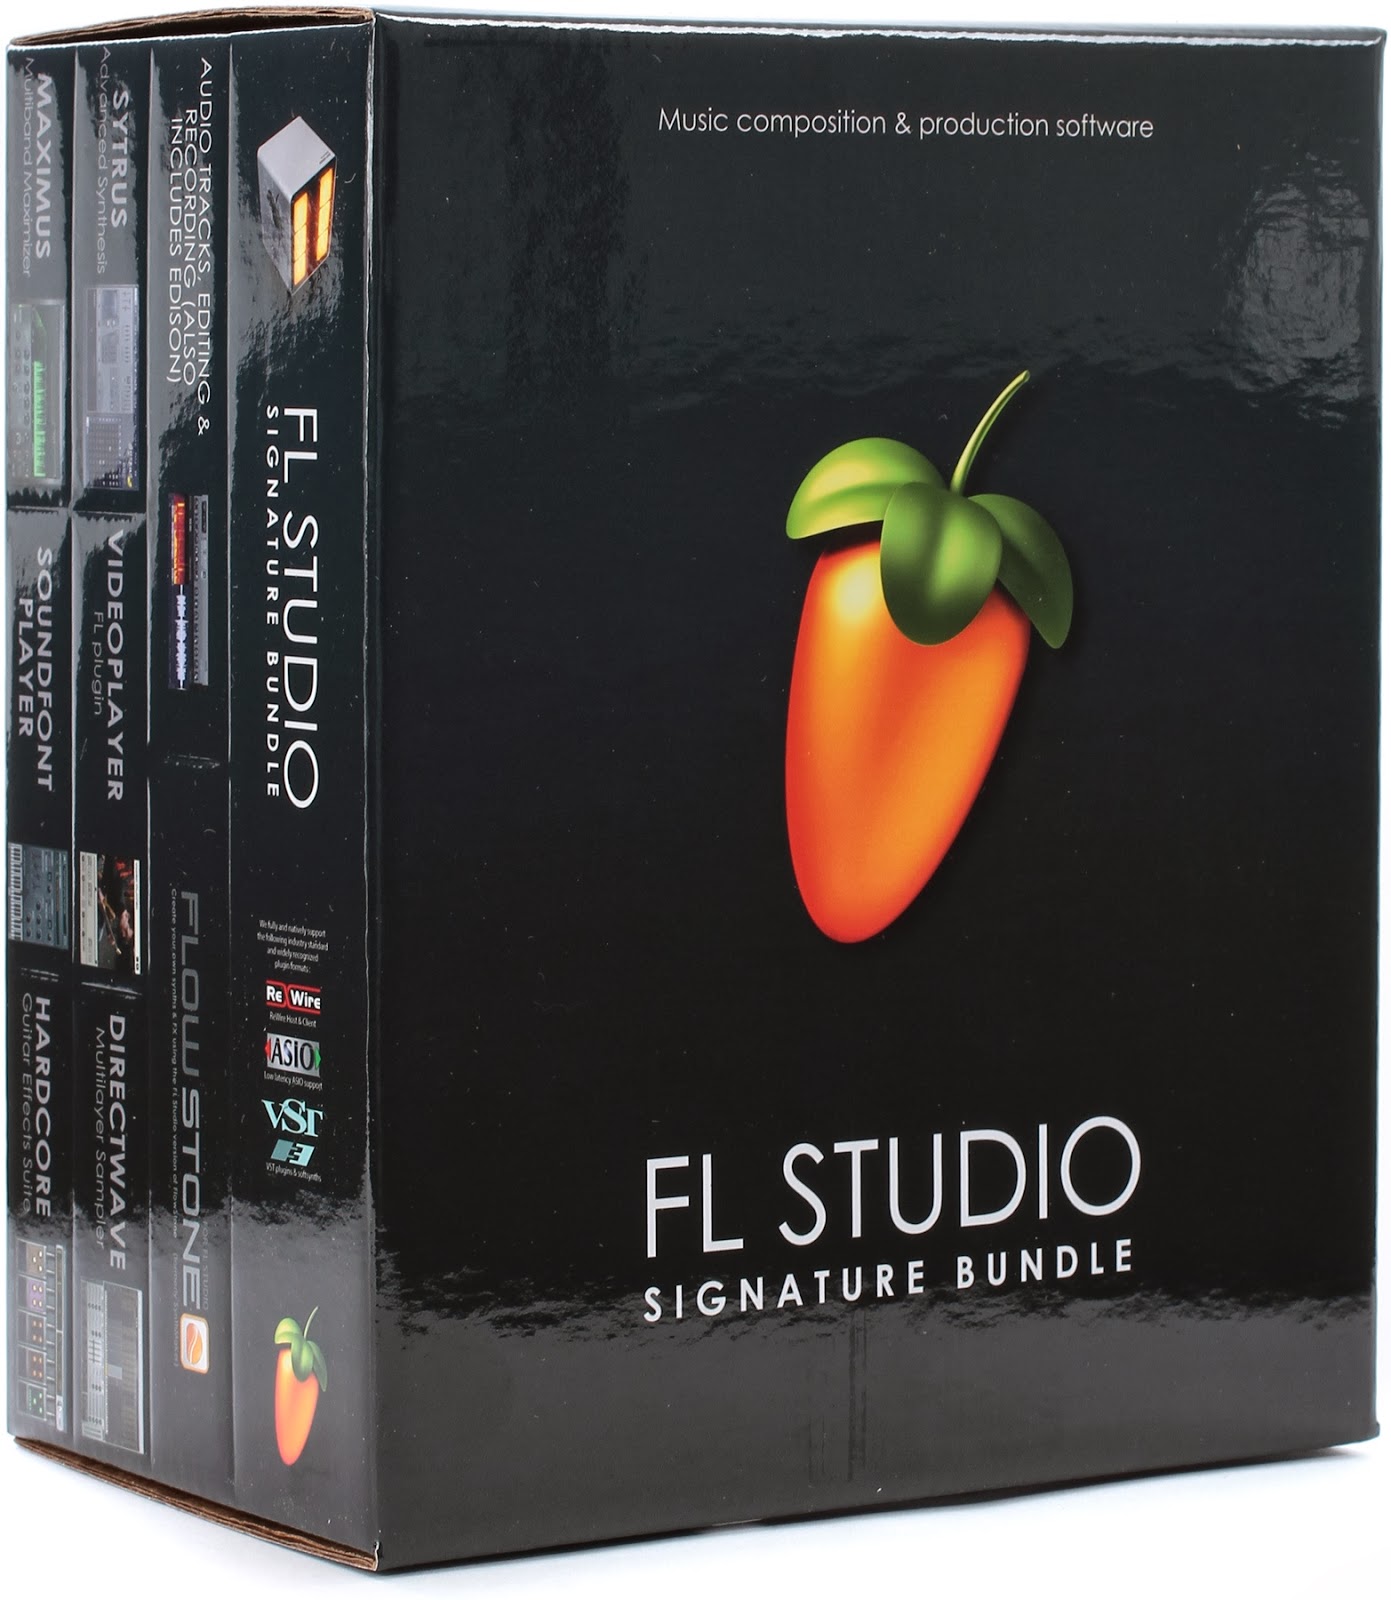 fl studio 10 serial number